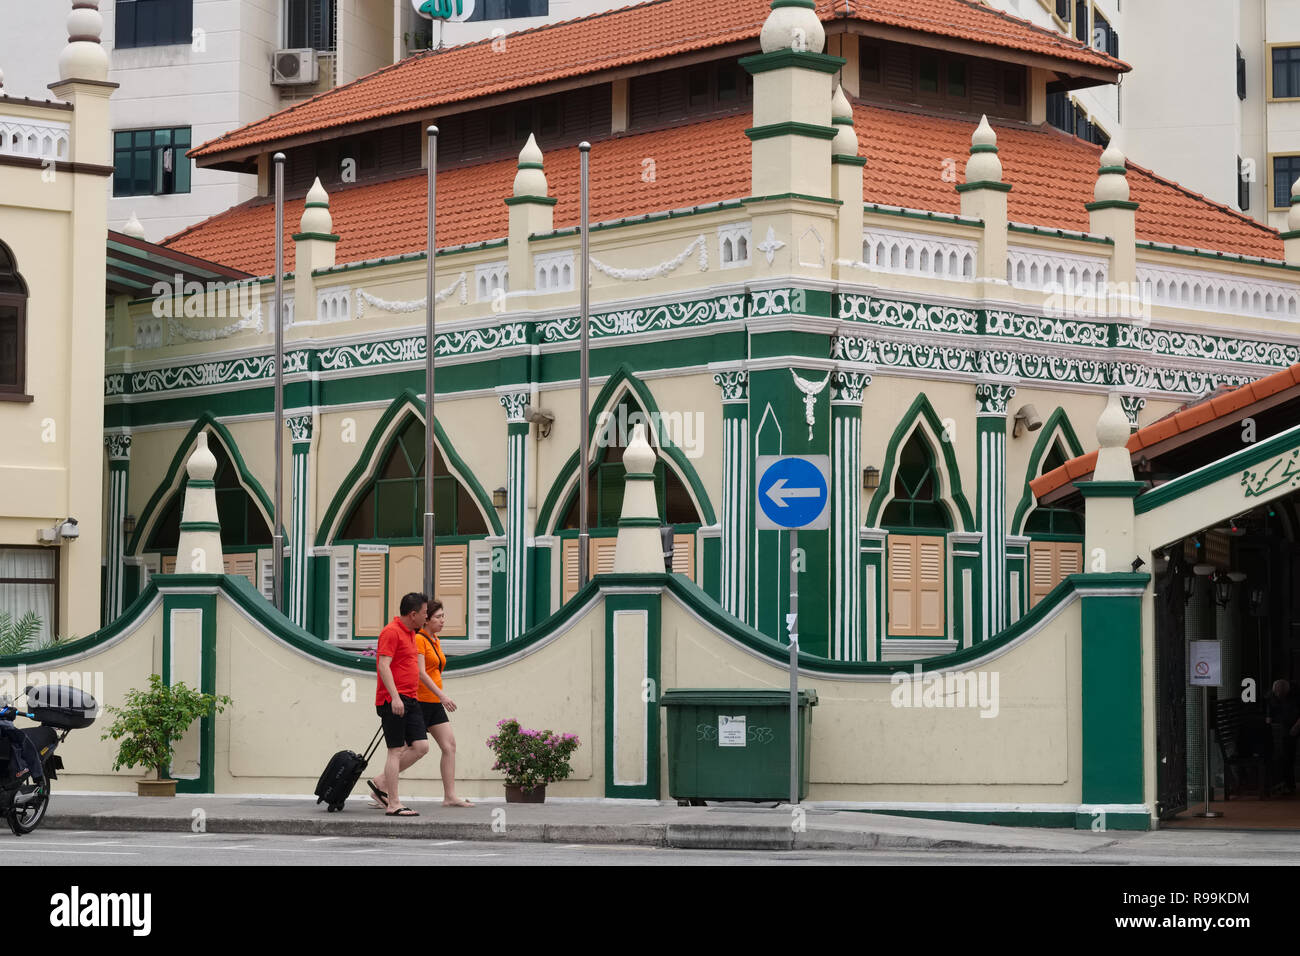 Les passants en face de Khadidja mosquée dans la zone de Geylang, Singapour, Geylang étant connu pour ses ruelles remplies de maisons closes et des prostituées Banque D'Images